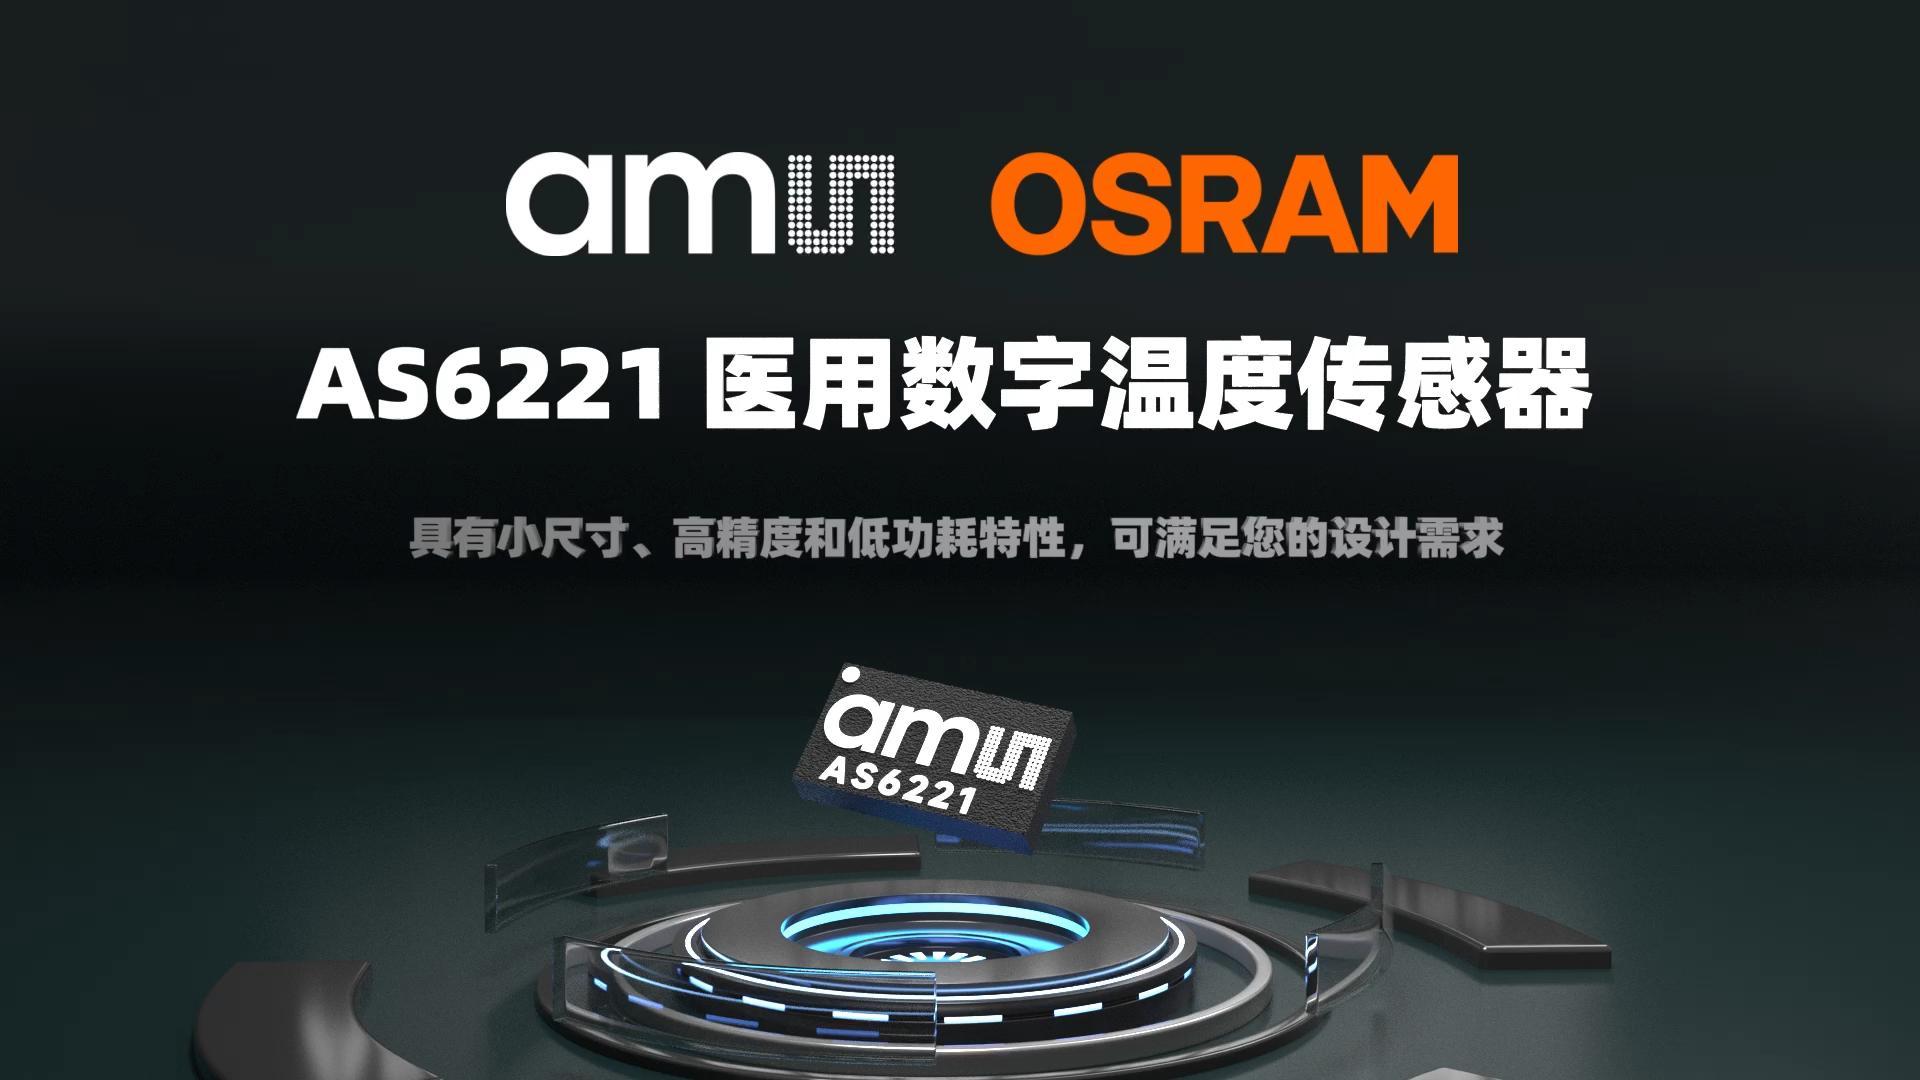 ams OSRAM AS6221 具有小尺寸、高精度和低功耗特性，可满足您的设计需求